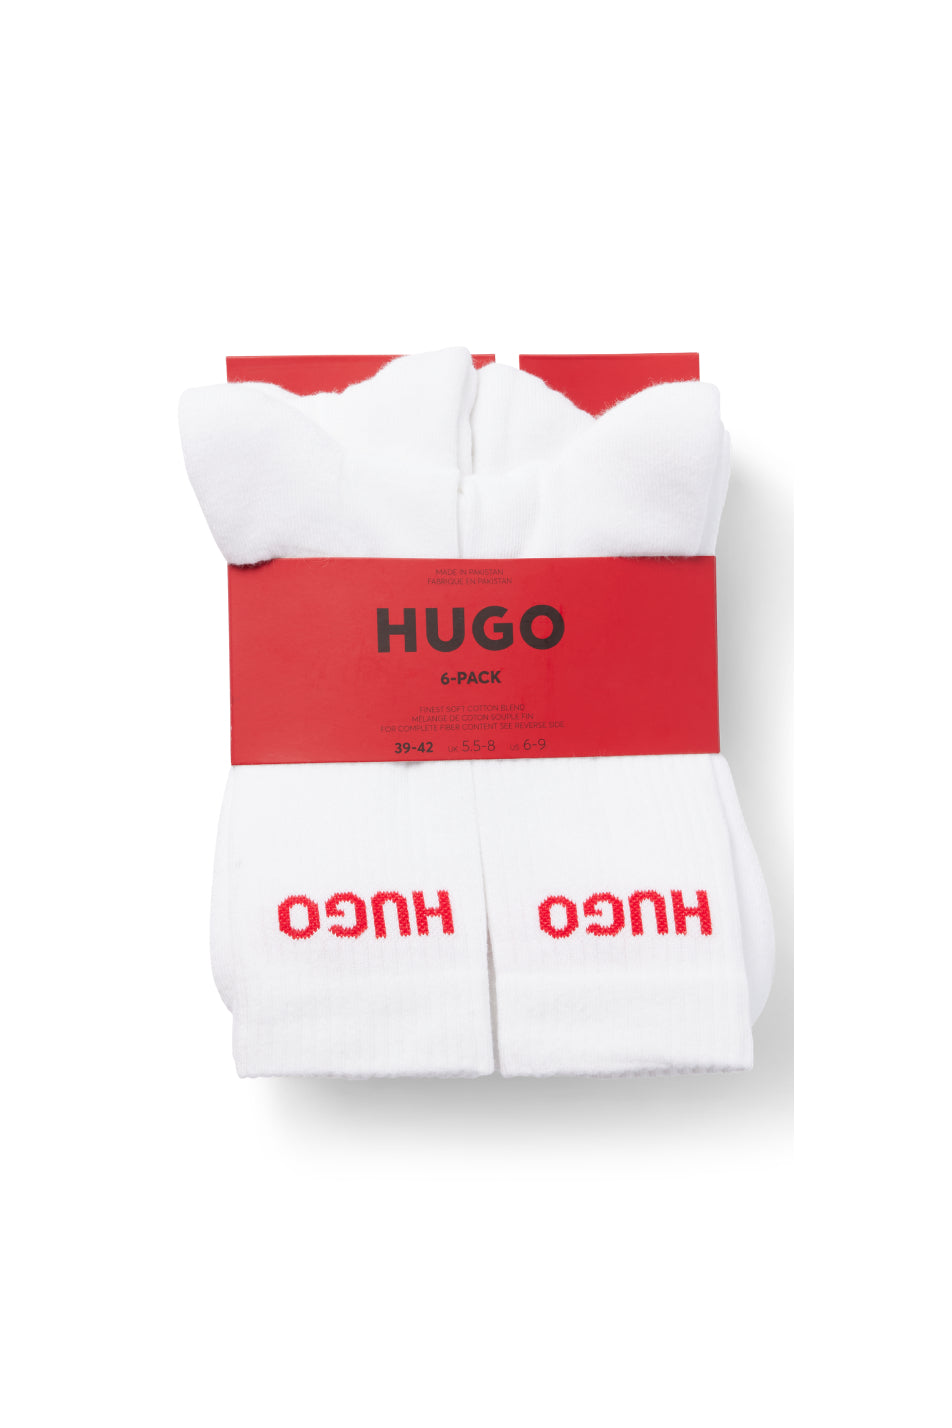 HUGO 6 Pack Men's Rib Logo Sock